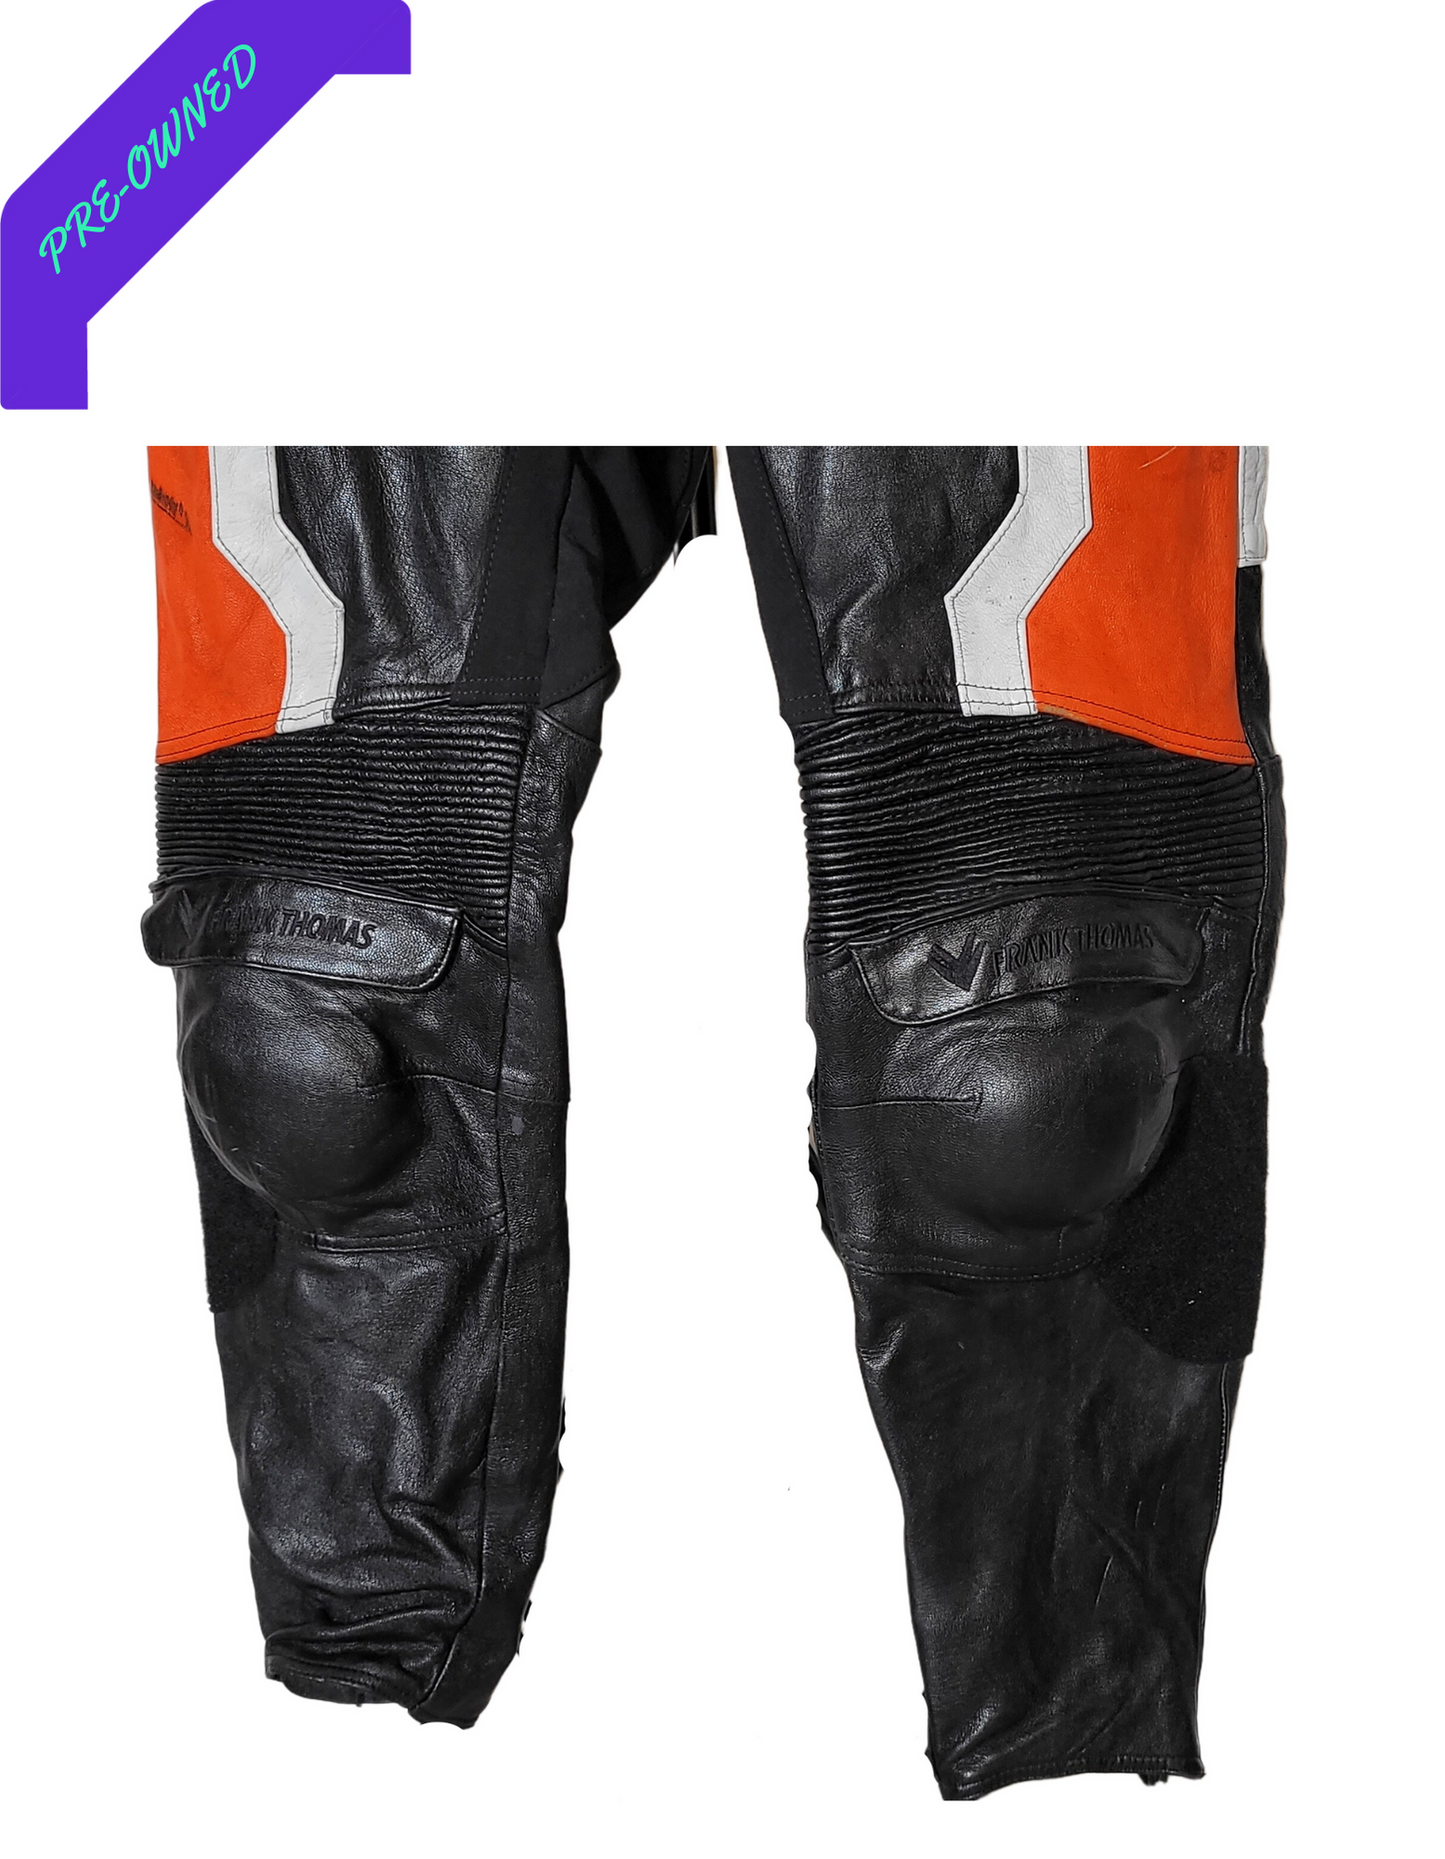 Frank Thomas I Men Racing Suit I 2-piece I Orange/Black